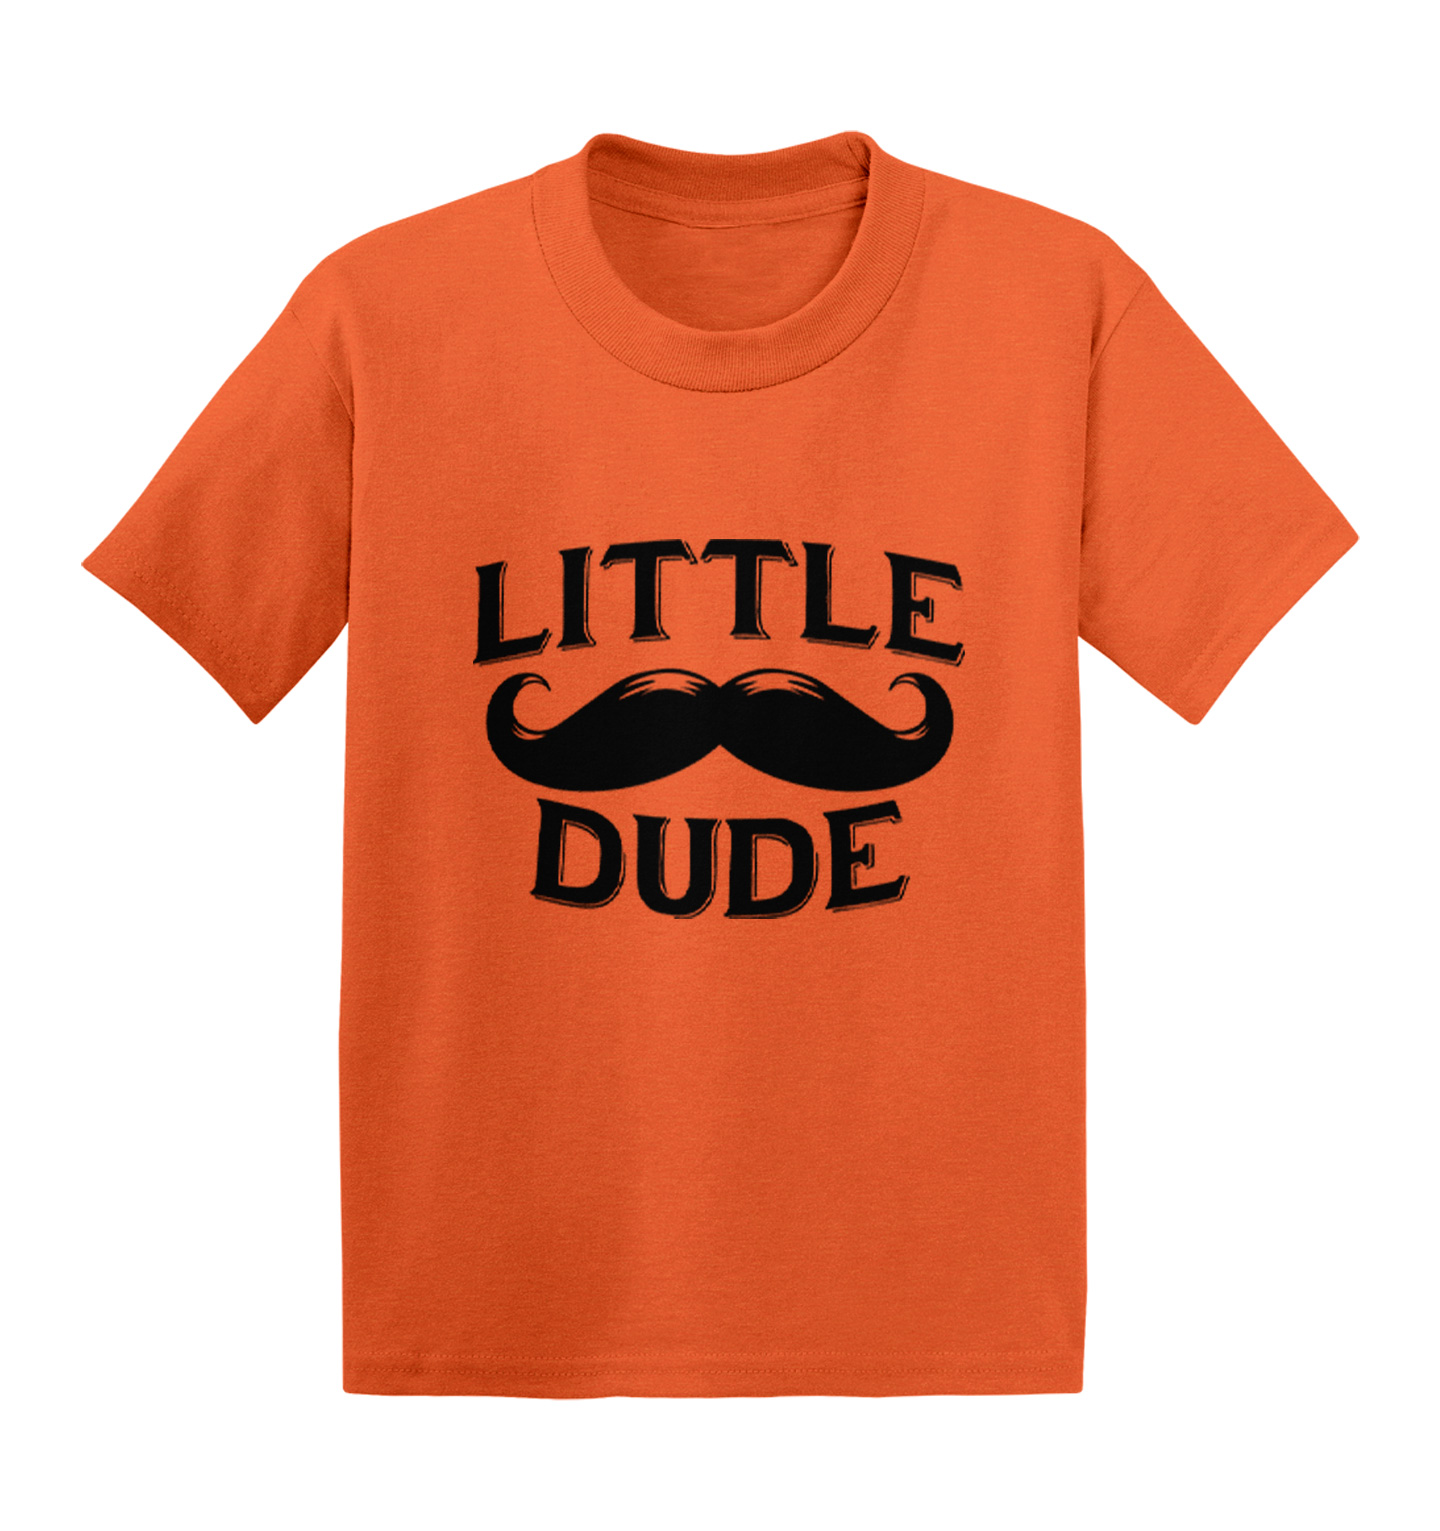 Little Dude - Mustache Funny Just Like Kids T-shirt | eBay